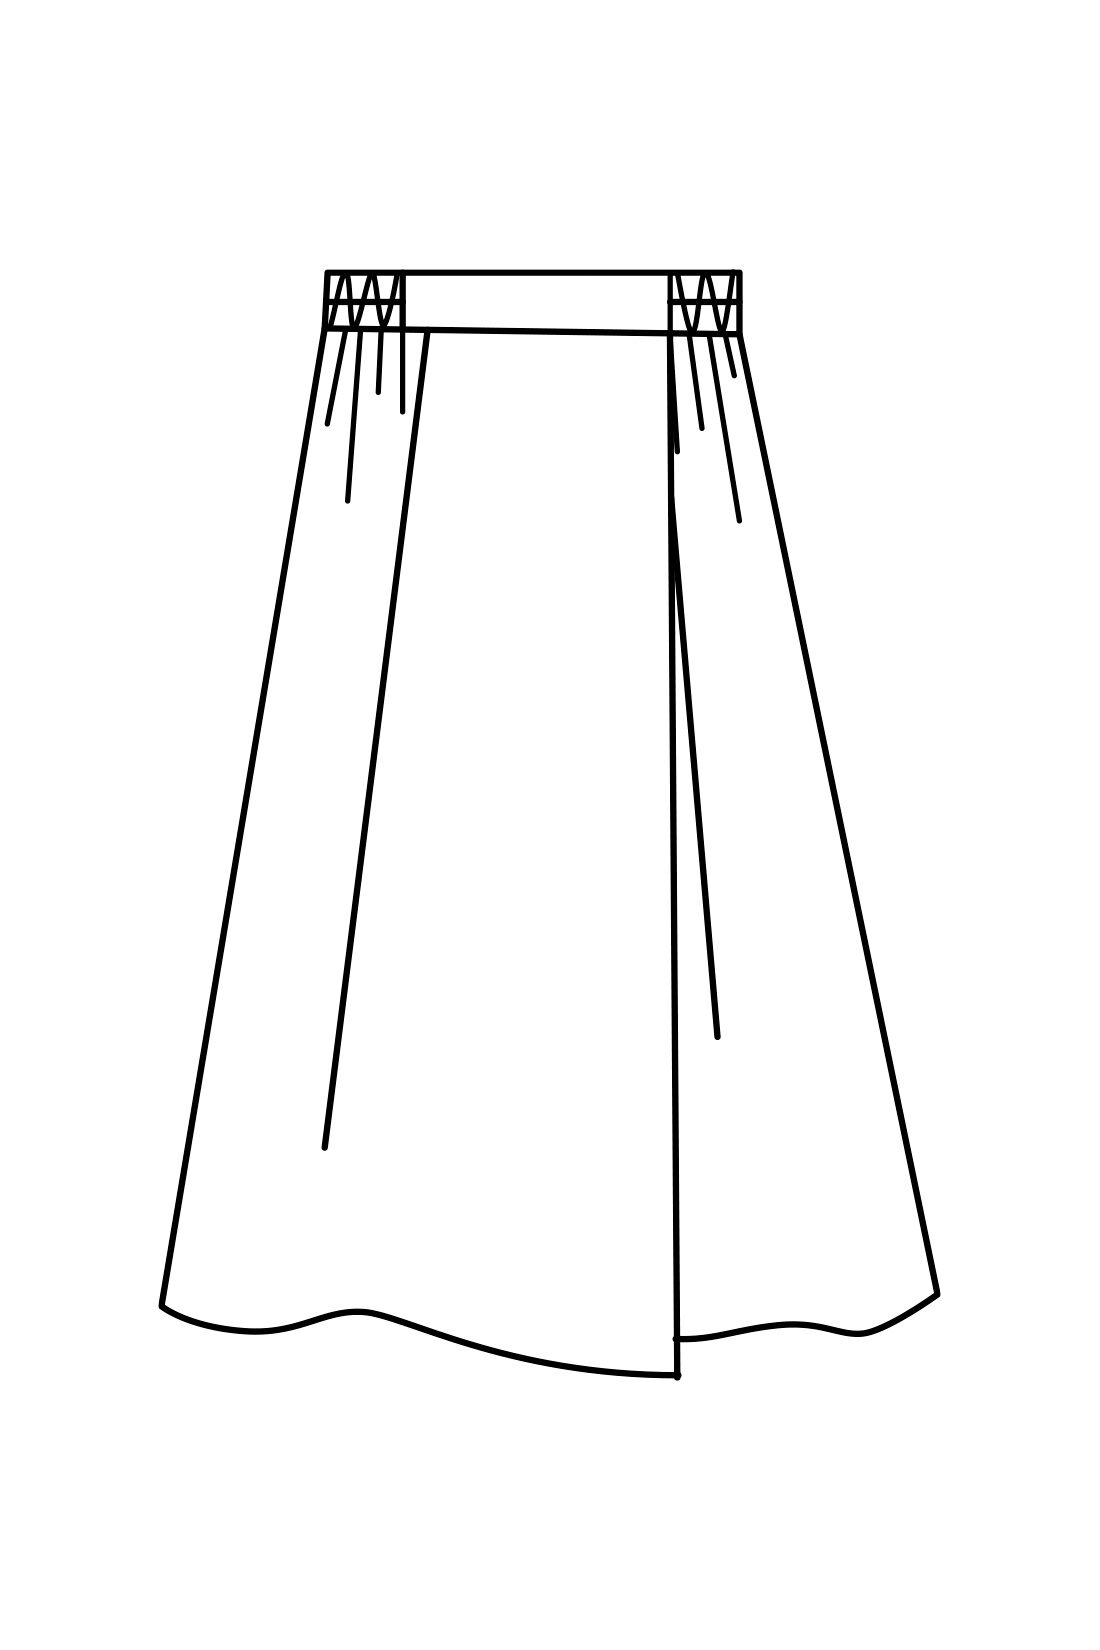 IEDIT|IEDIT[イディット]　きれいシルエットが印象的な着映えチェック柄のタックフレアースカート〈パープル〉|片方だけフロントへ向かって深く入れたアシメトリーなタックで、単調にならず華やぎ感のあるルックスに。